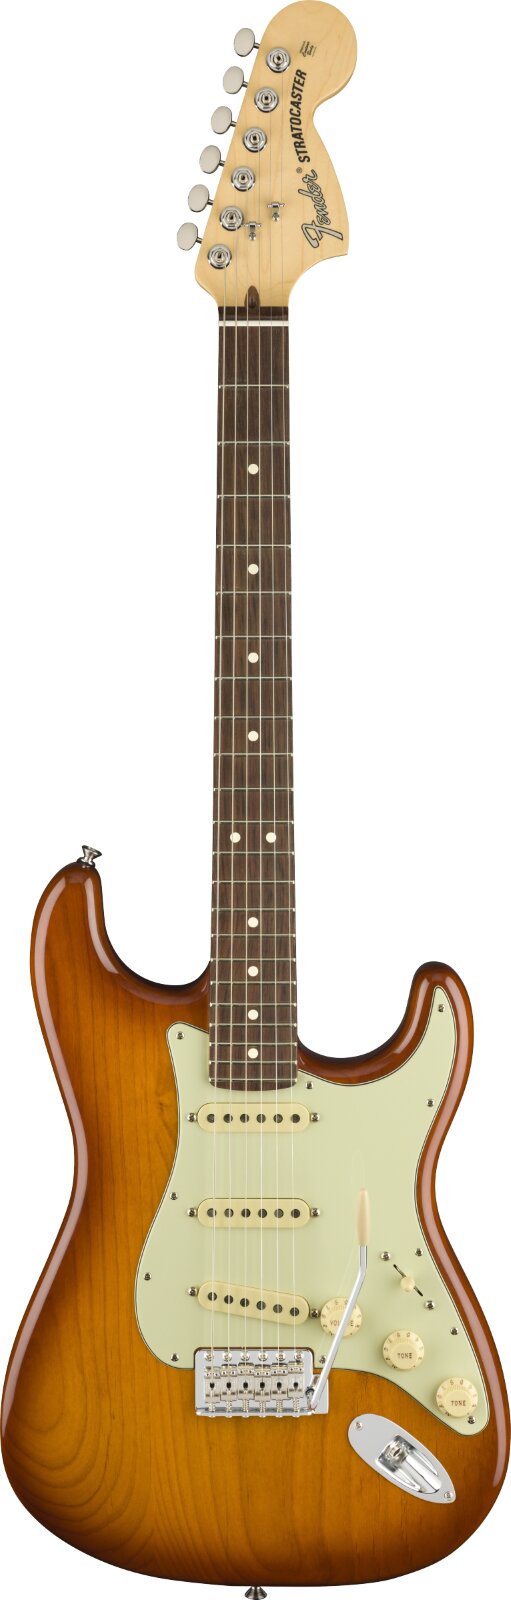 Fender American Performer Stratocaster, Palisandergriffbrett, Honey Burst : photo 1